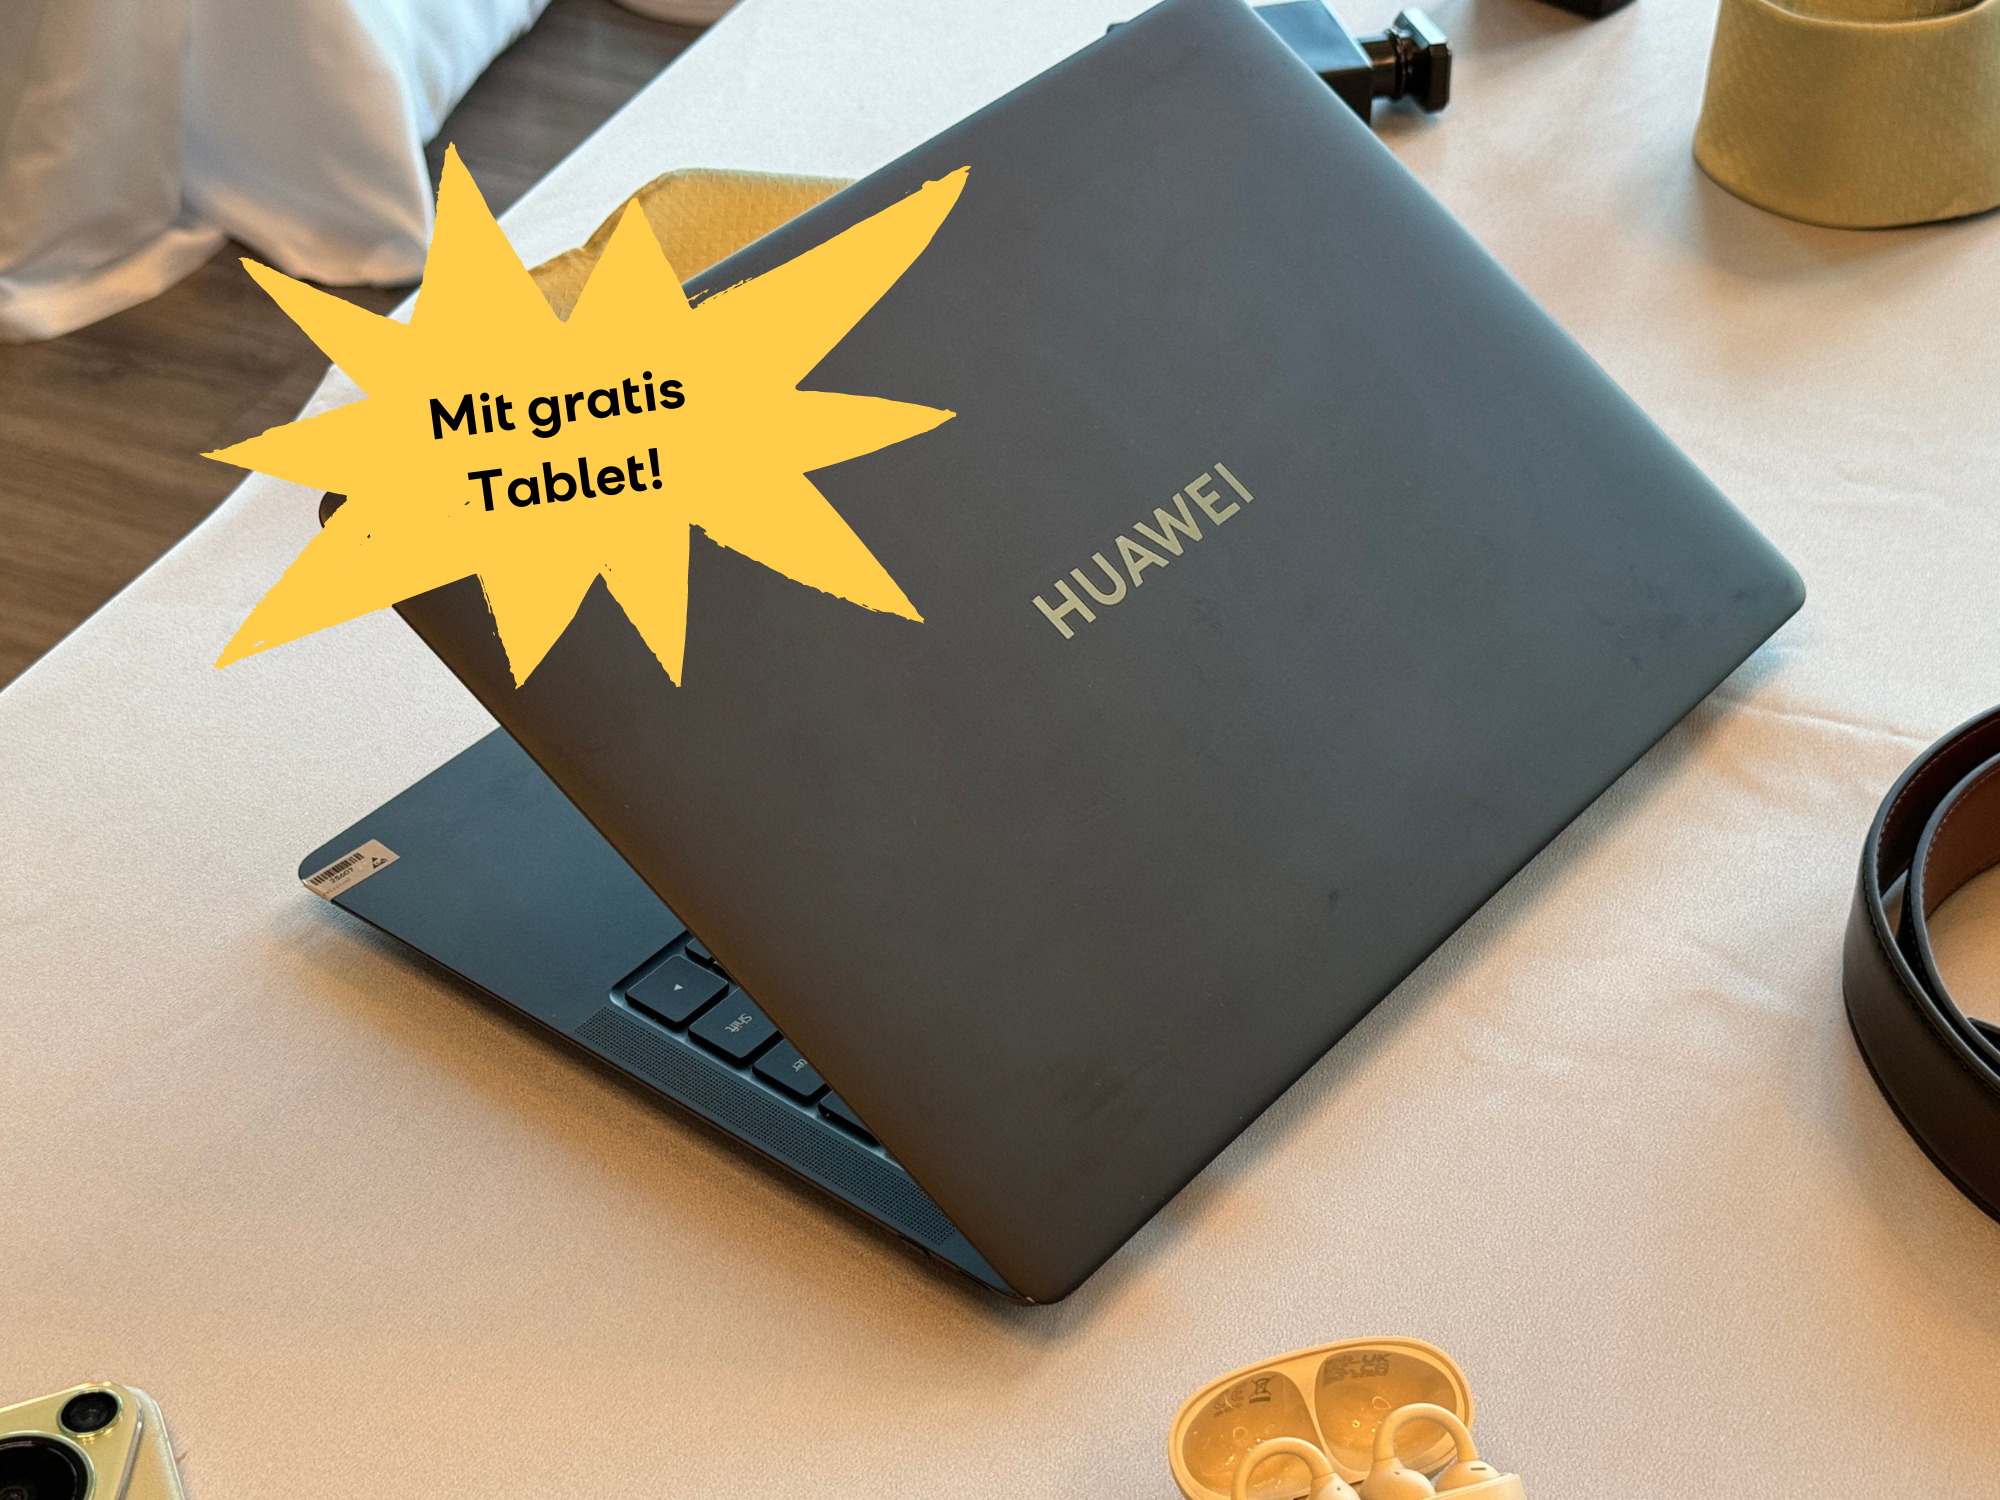 Tablet geschenkt zum Huawei MateBook X Pro